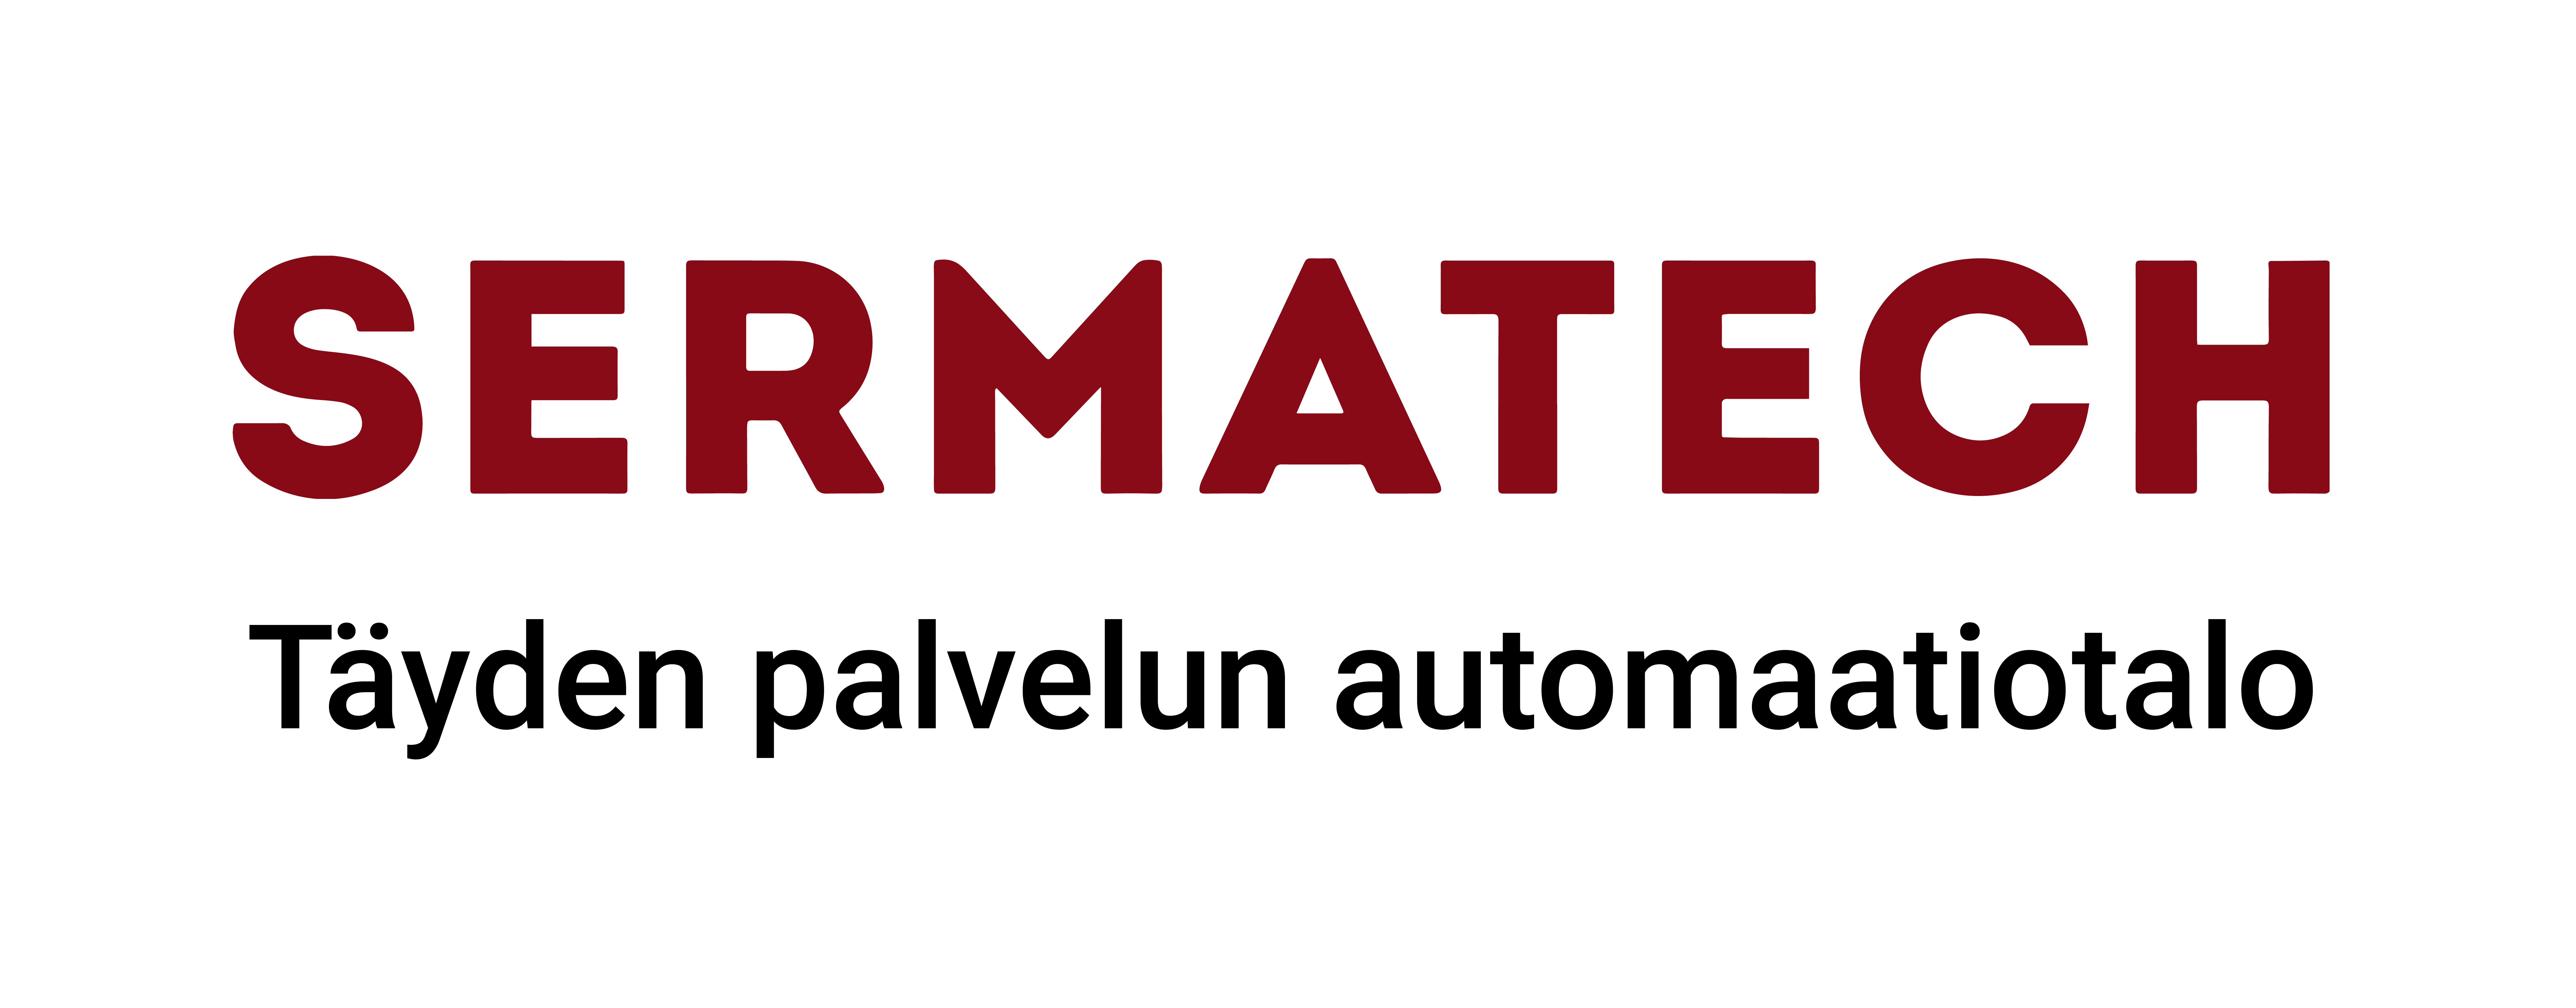 Sermatech Automation Logo